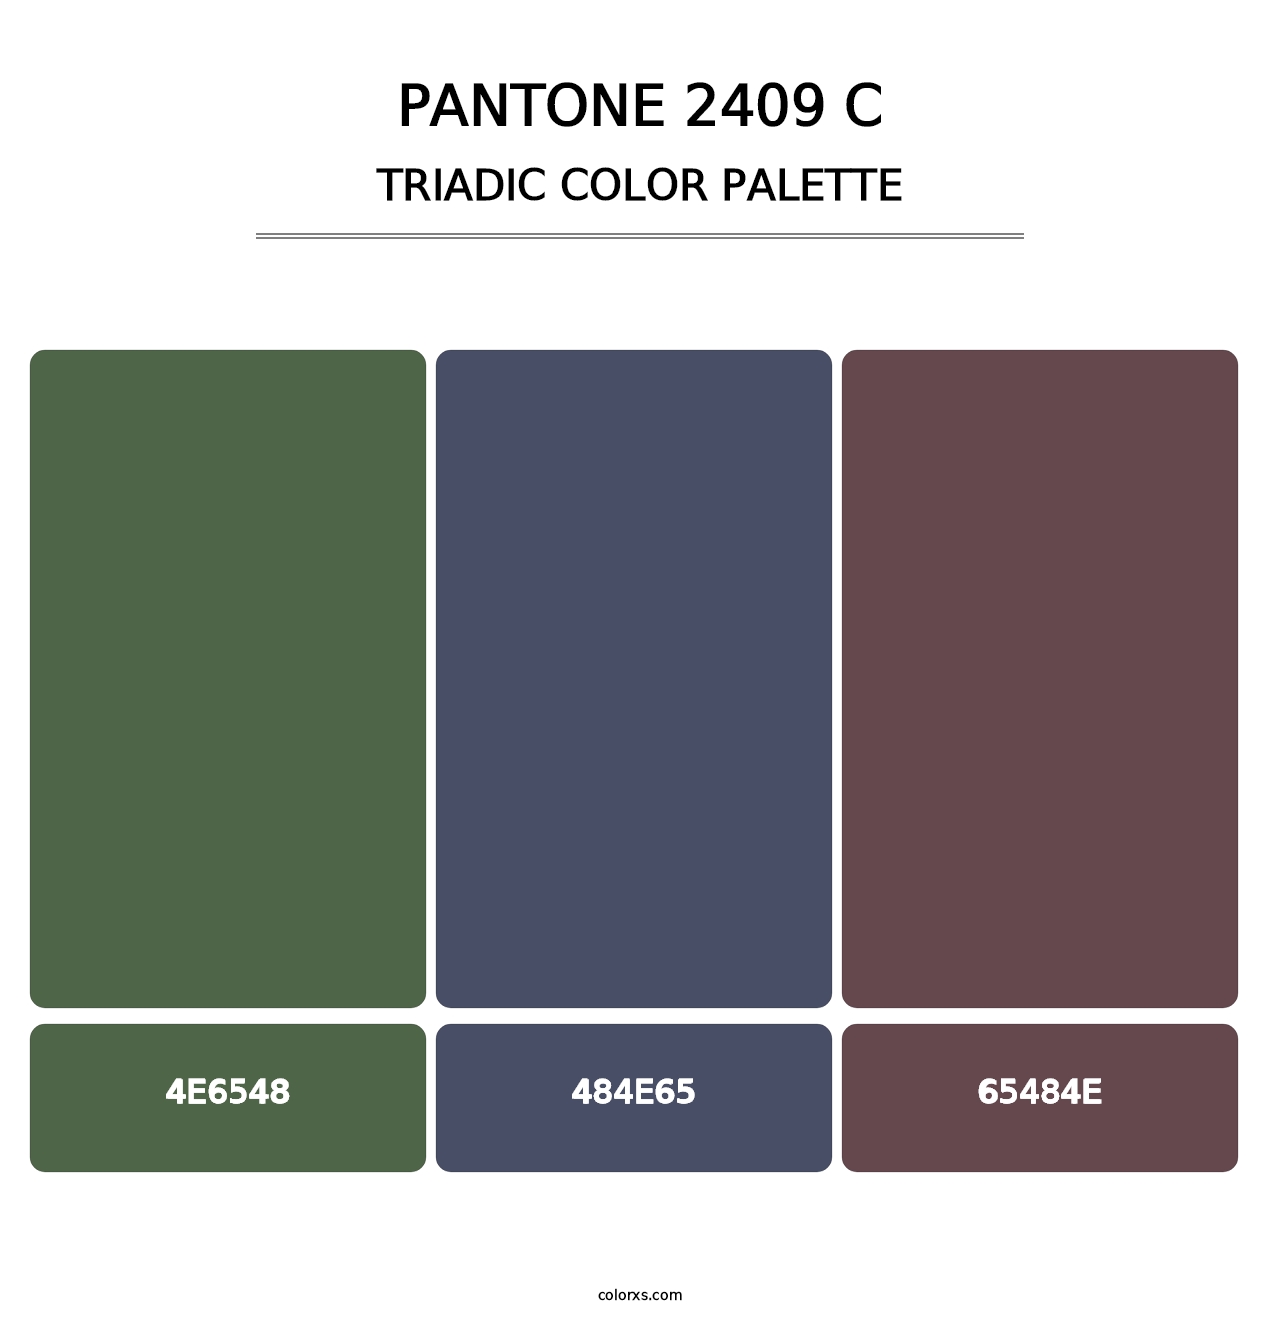 PANTONE 2409 C - Triadic Color Palette